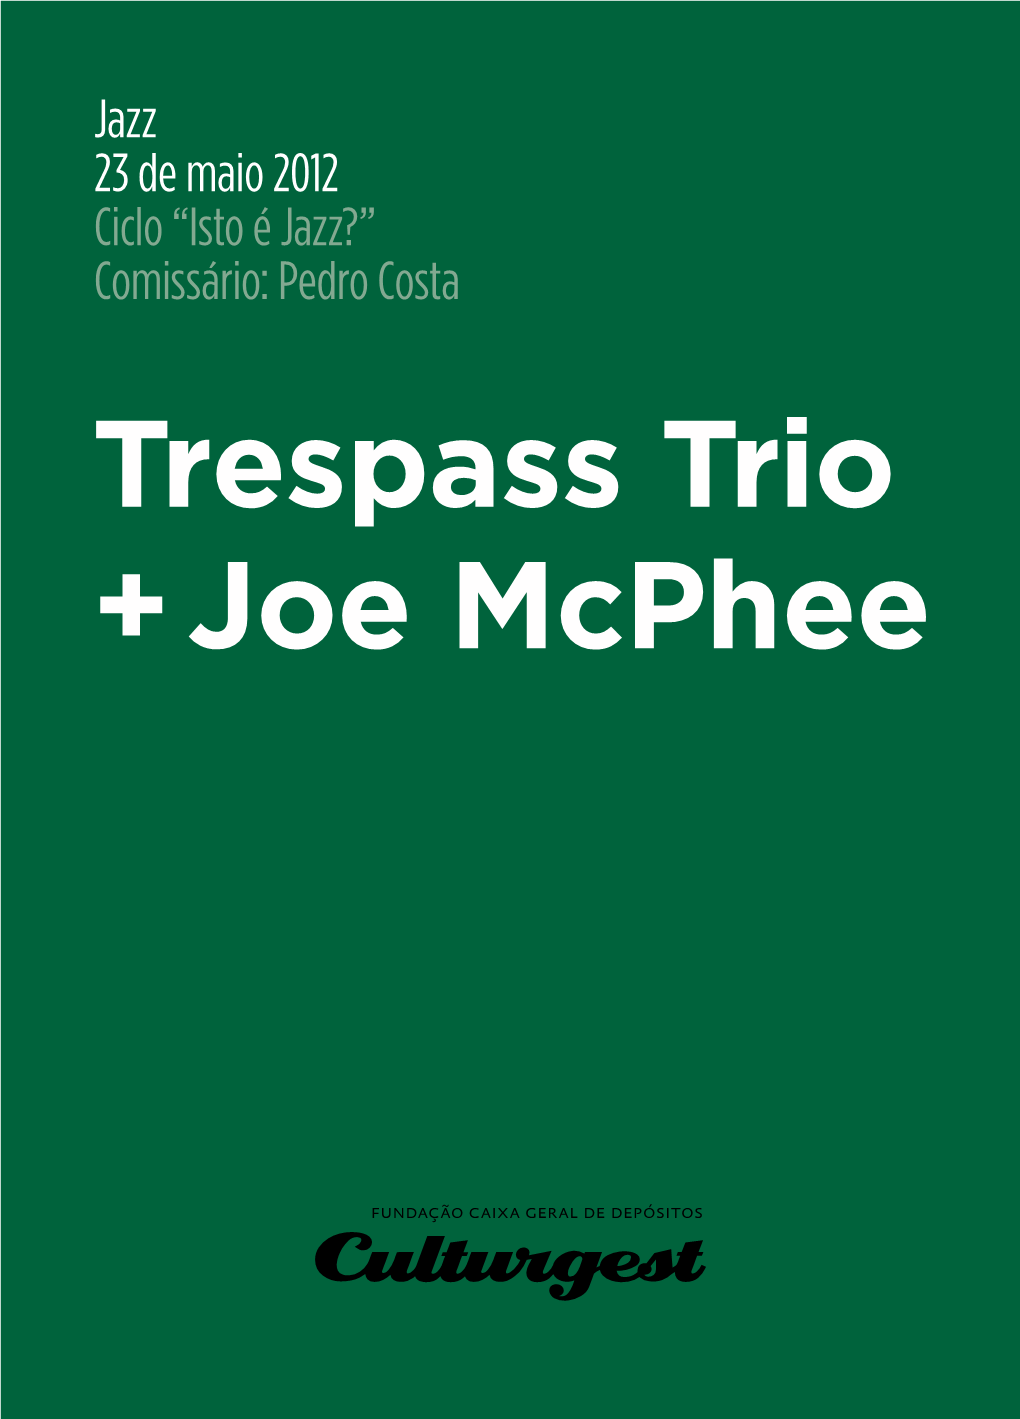 Trespass Trio + Joe Mcphee